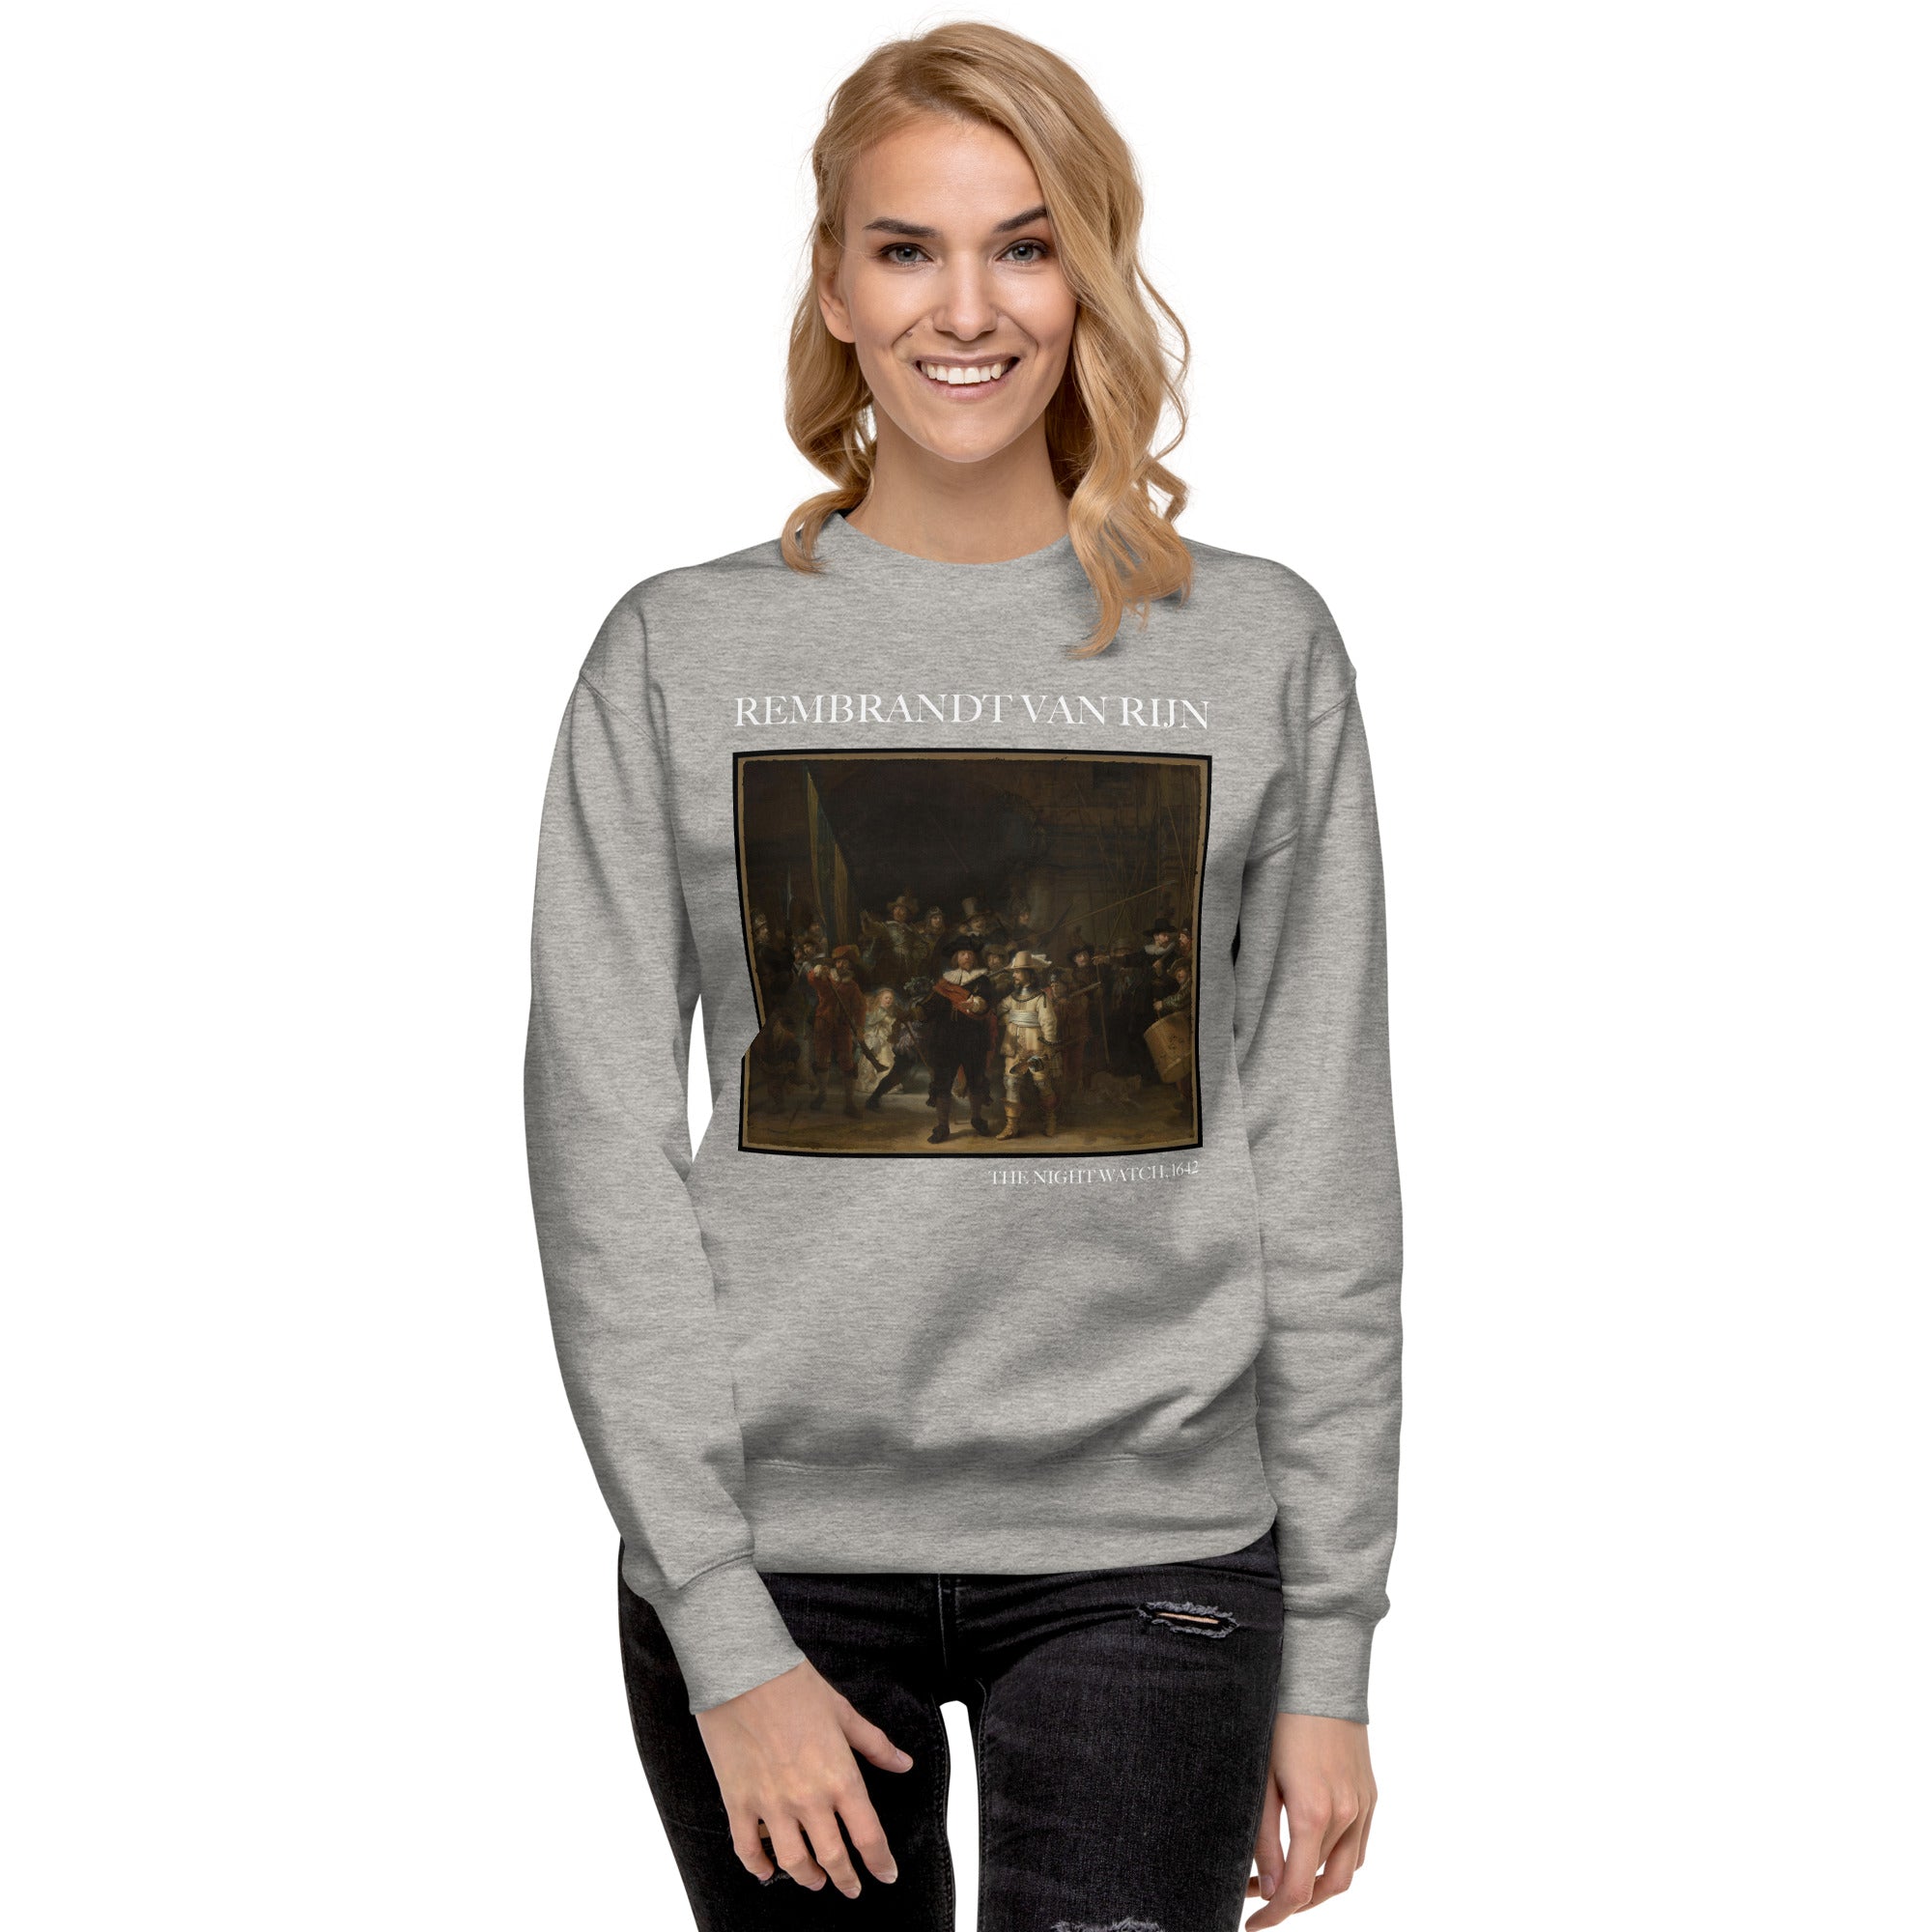 Rembrandt van Rijn 'The Night Watch' Famous Painting Sweatshirt | Unisex Premium Sweatshirt